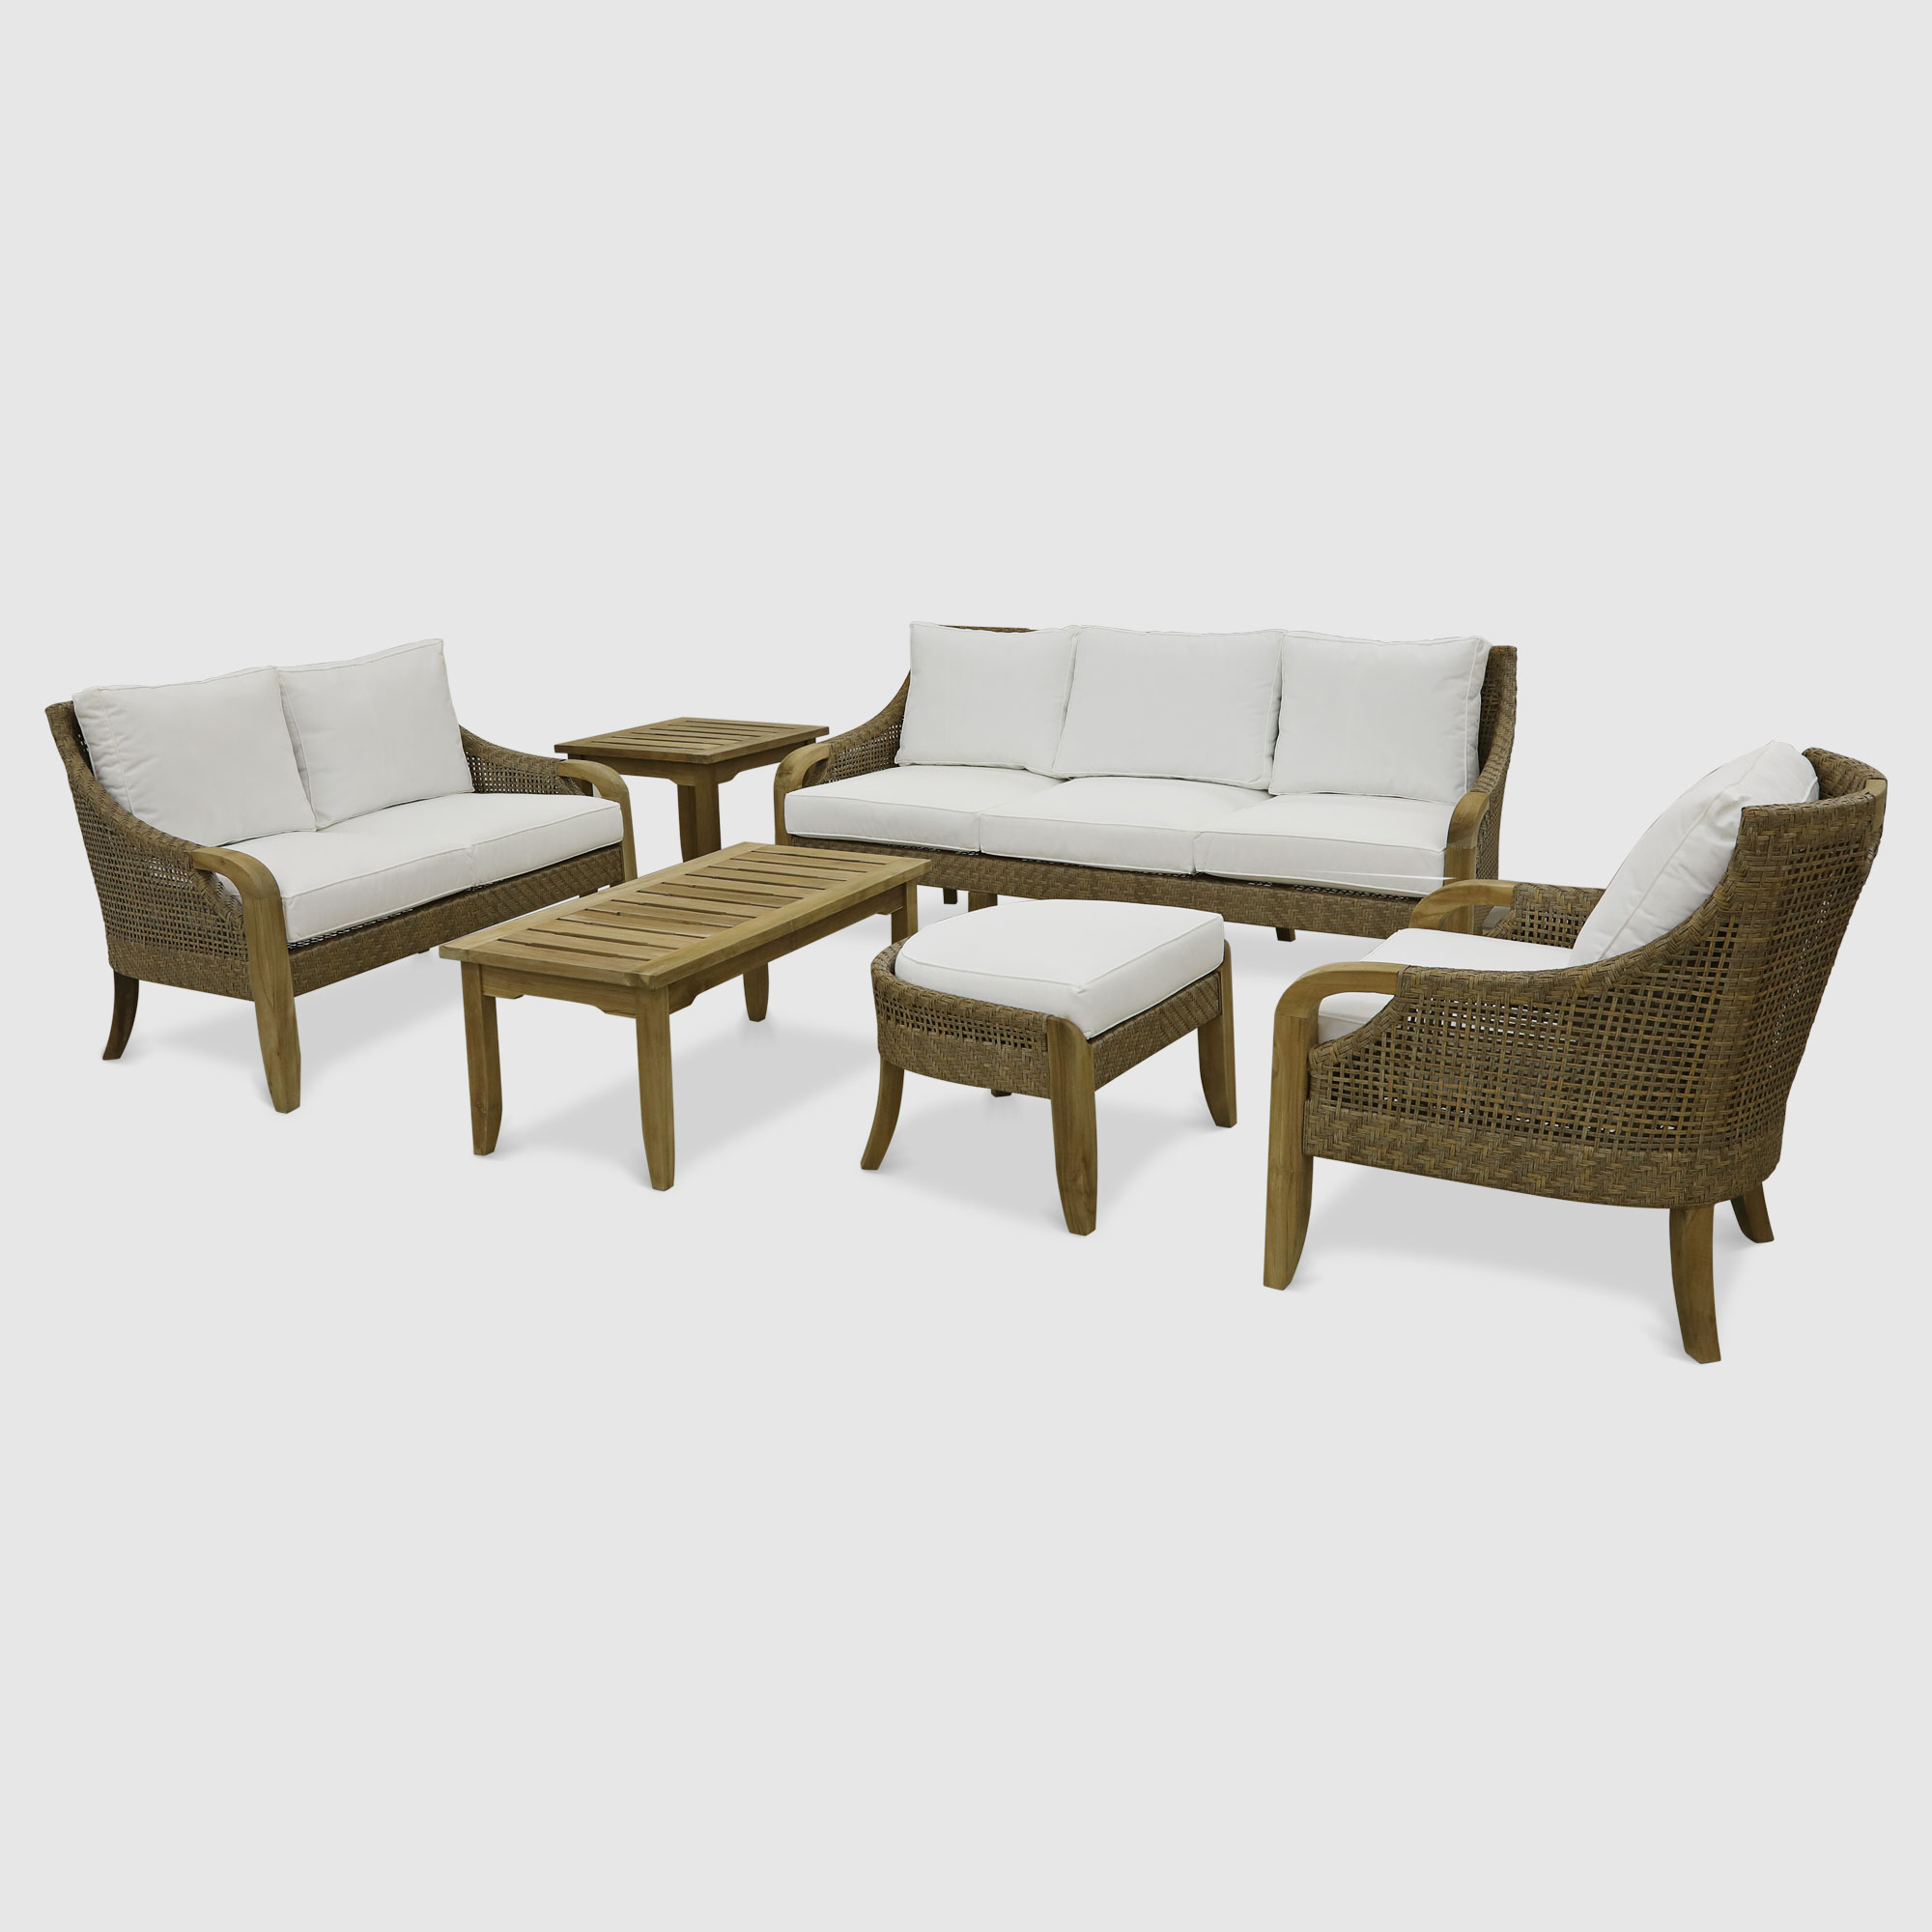 Комплект мебели Jepara Curved 6 предметов комплект садовой мебели mandella karizma коричневый из 3 предметов